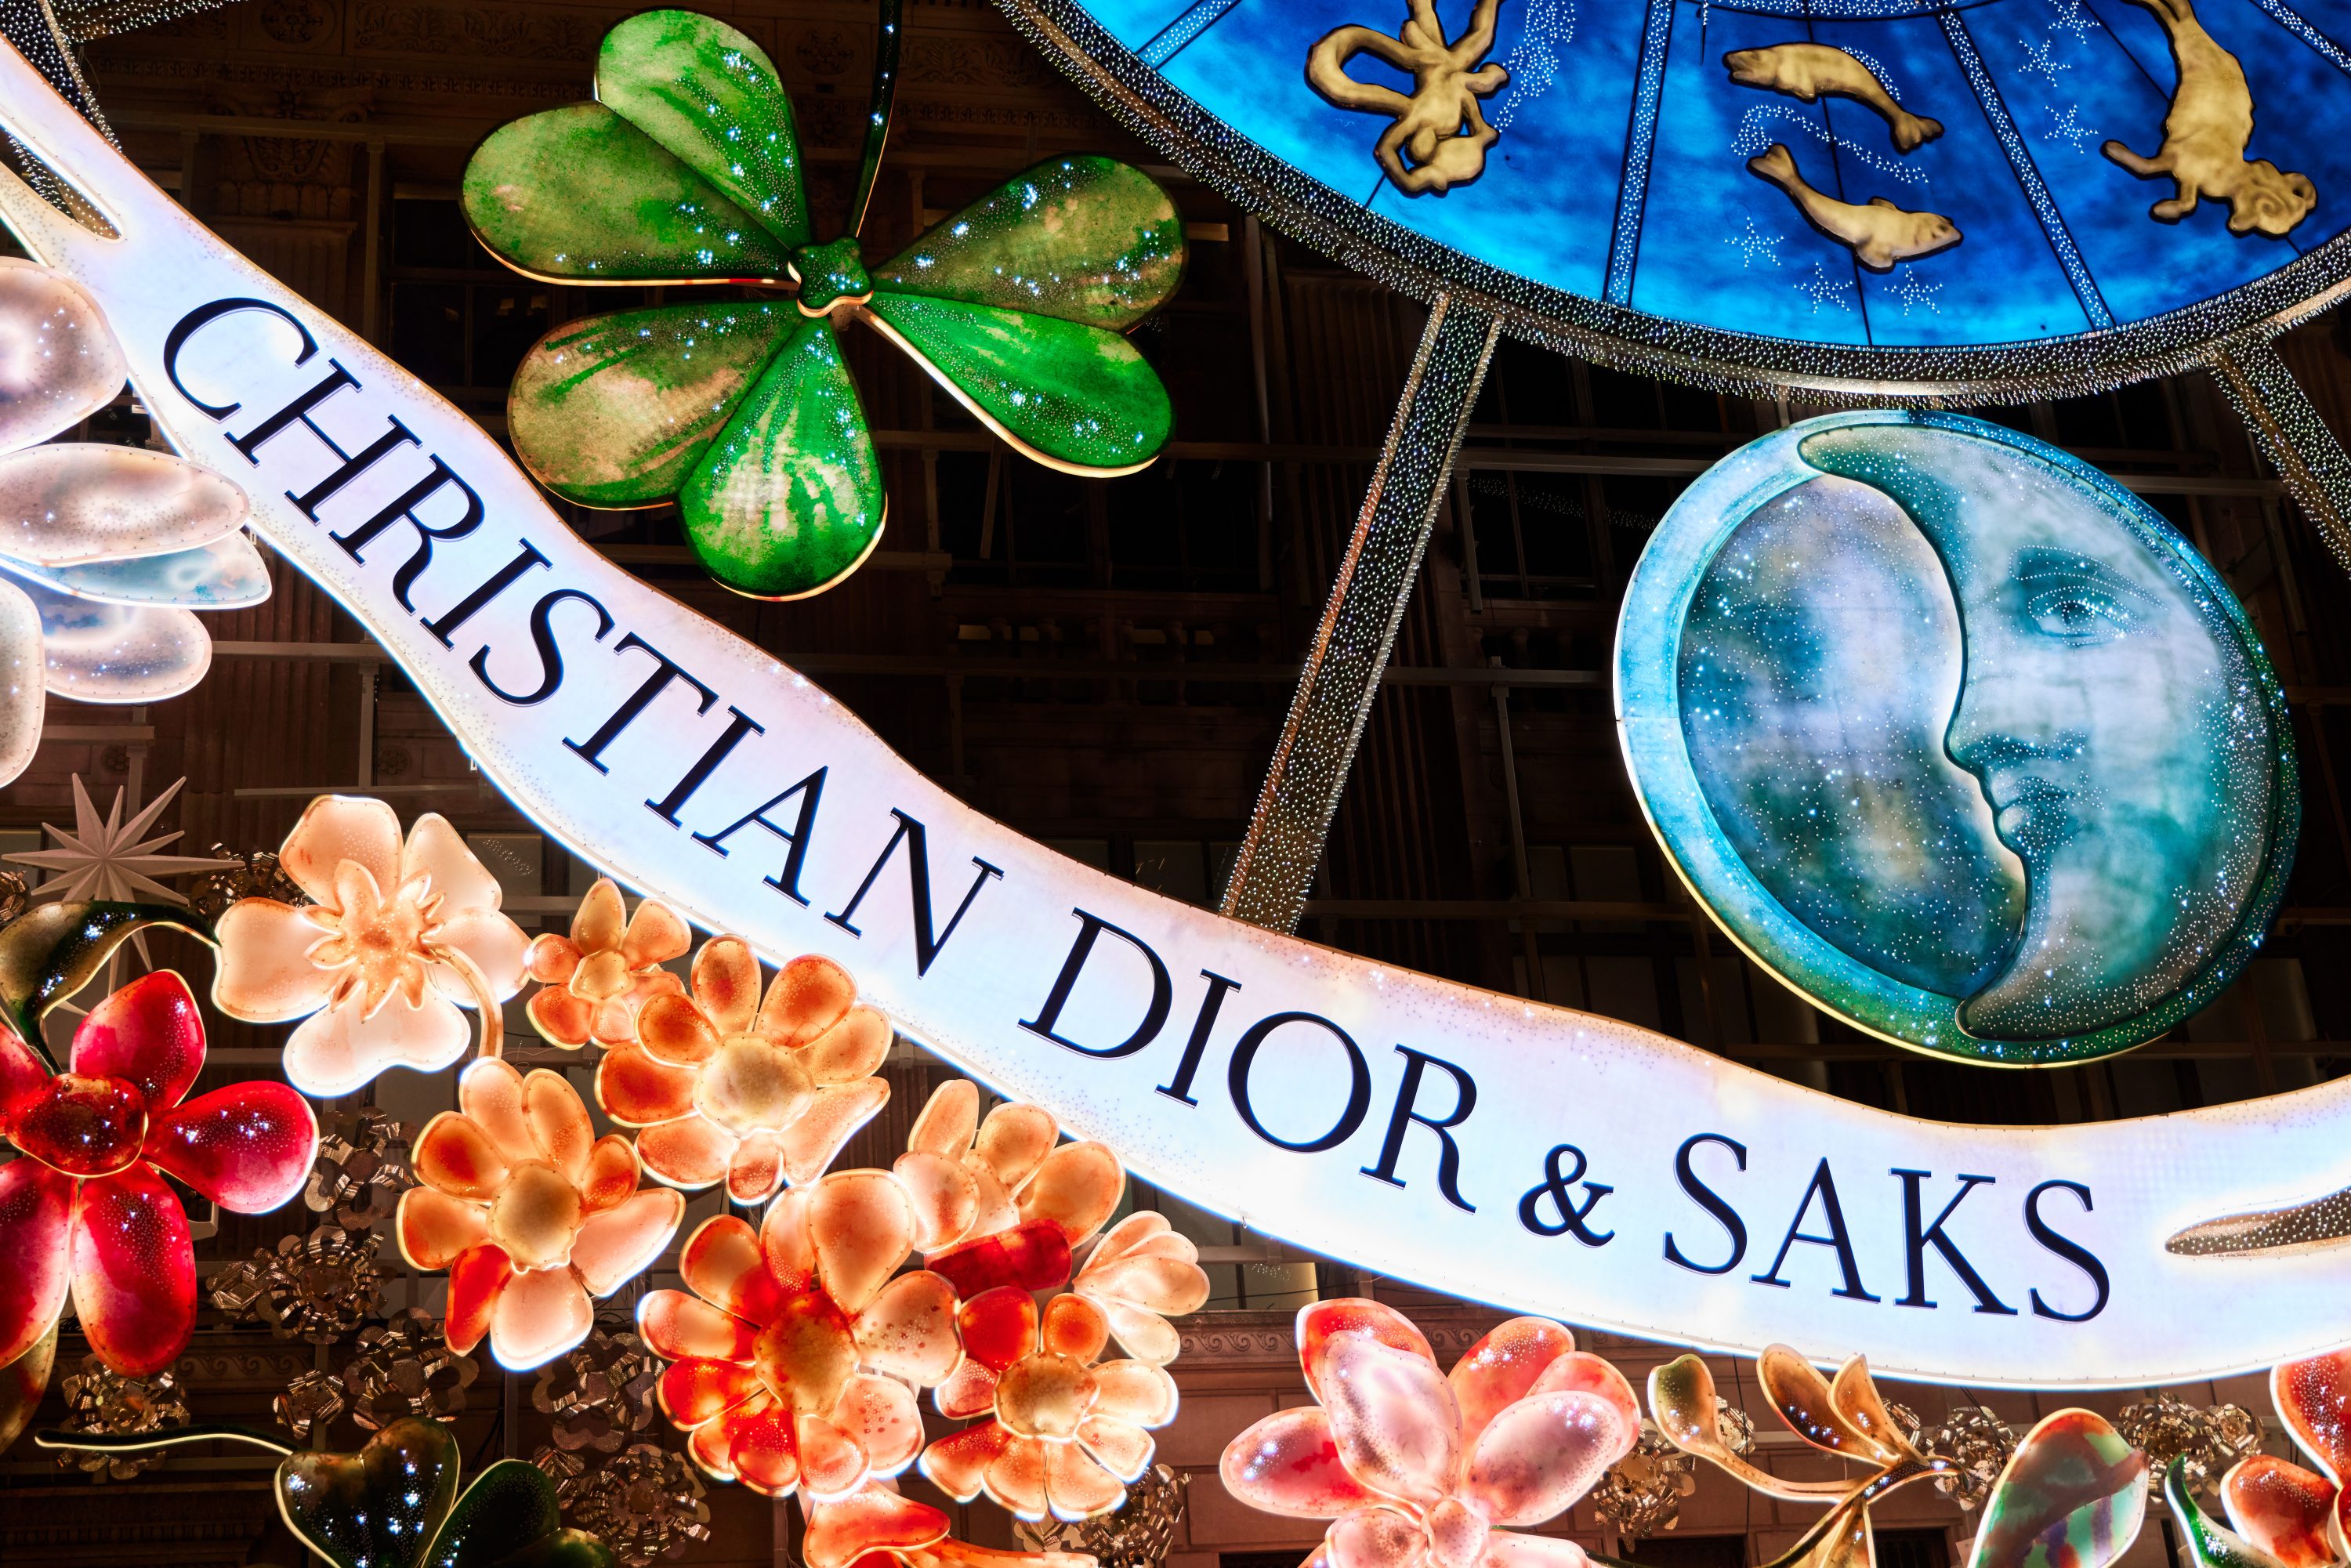 Dior-ისა და Saks-ის თანამშრომლობით Carousel of Dreams ინსტალაცია შეიქმნა